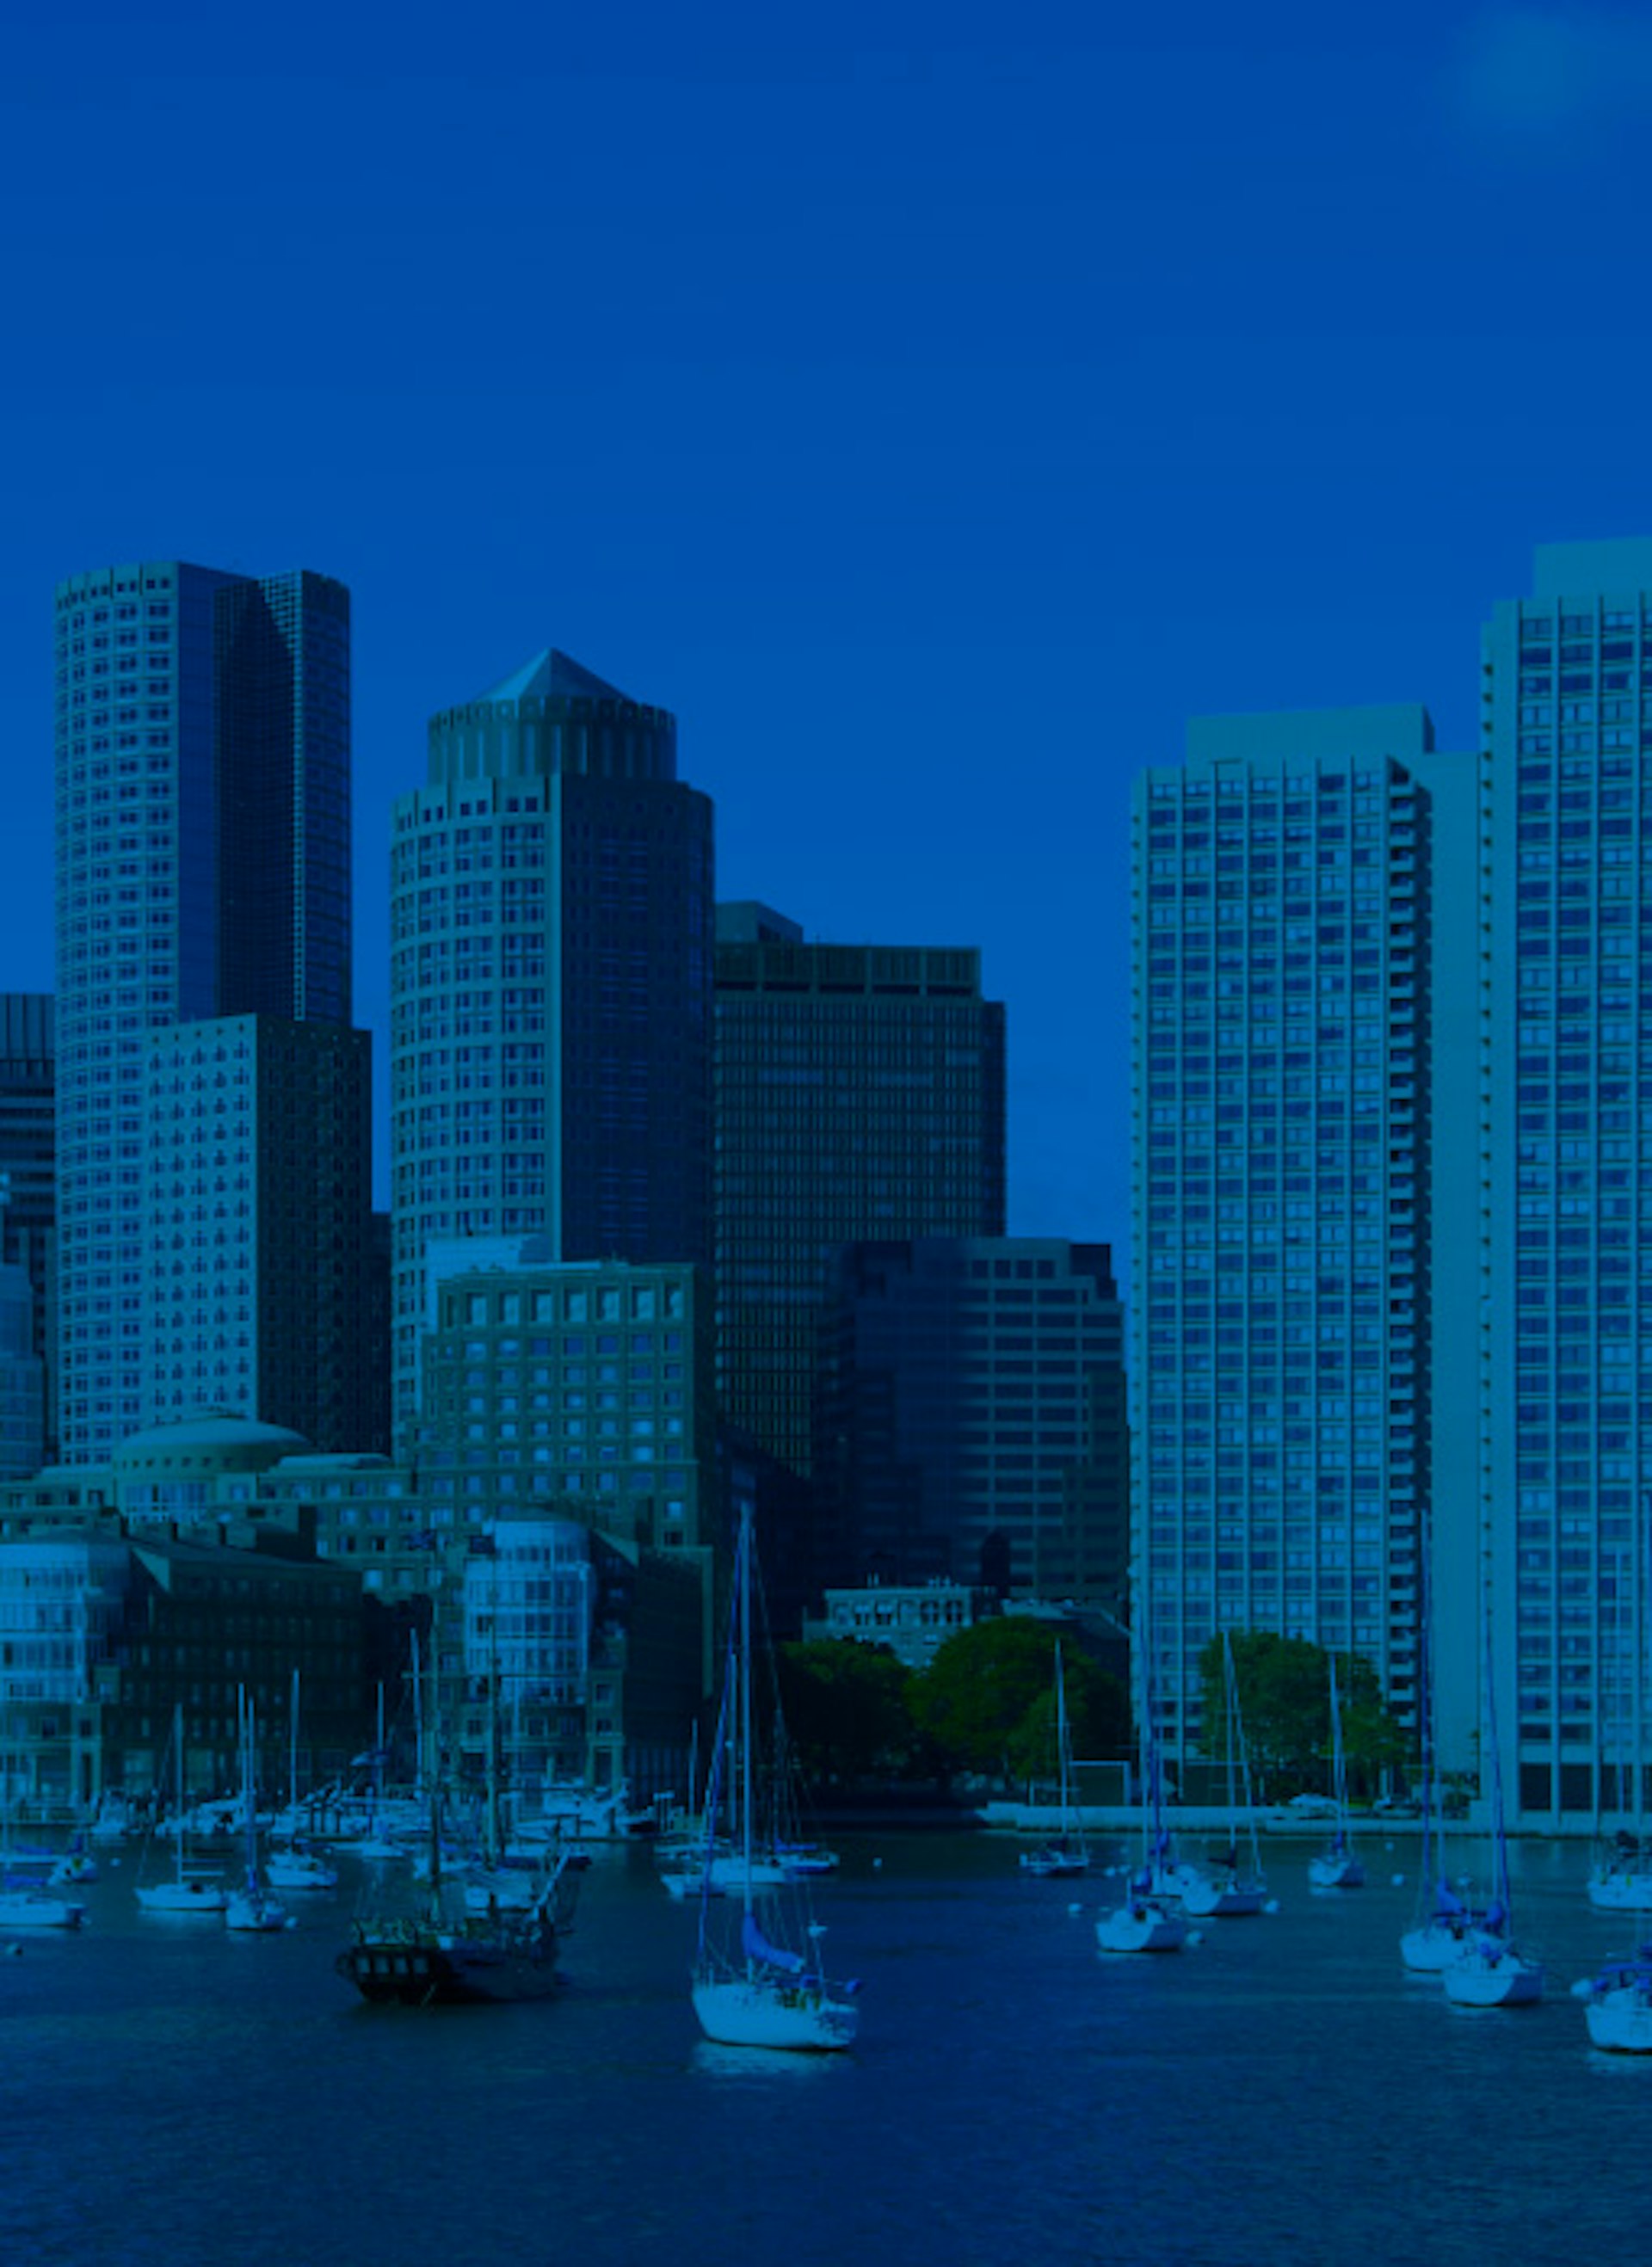 City of Boston background image